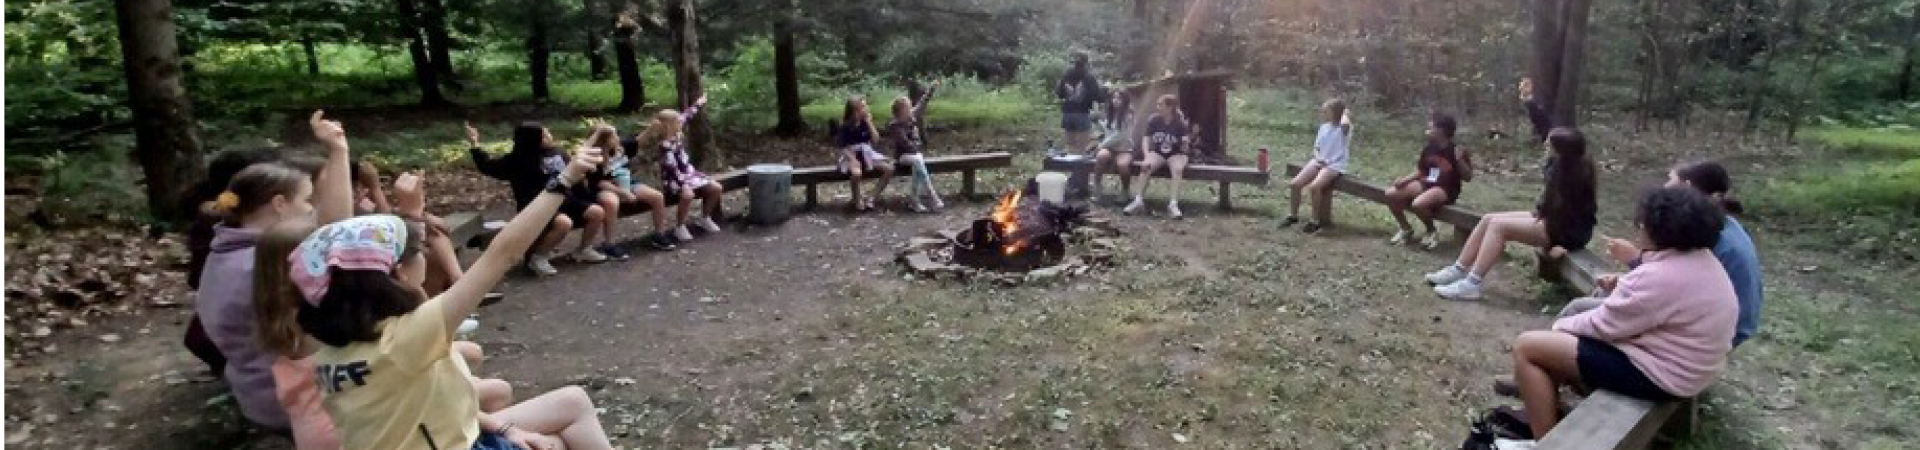  Girls sitting around a campfire 